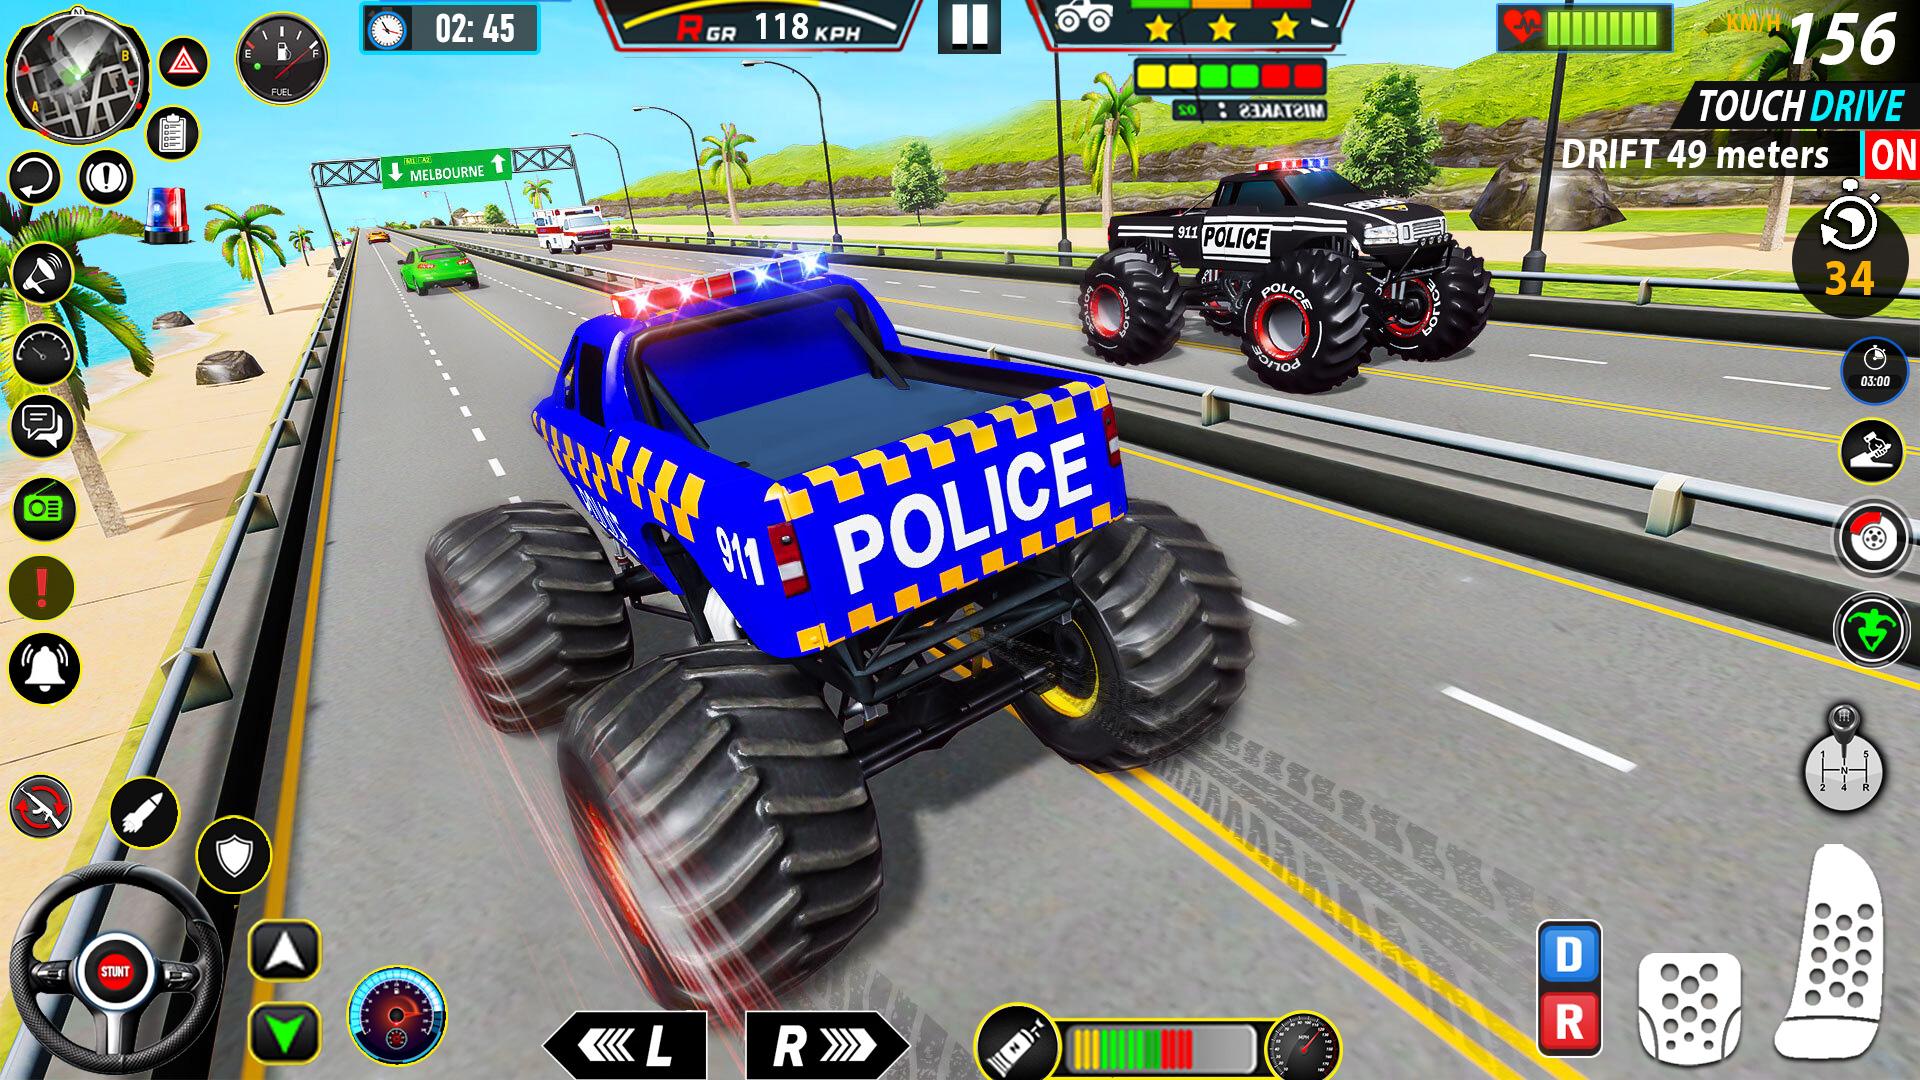 Real Monster Truck Derby Games v1.18 MOD APK 